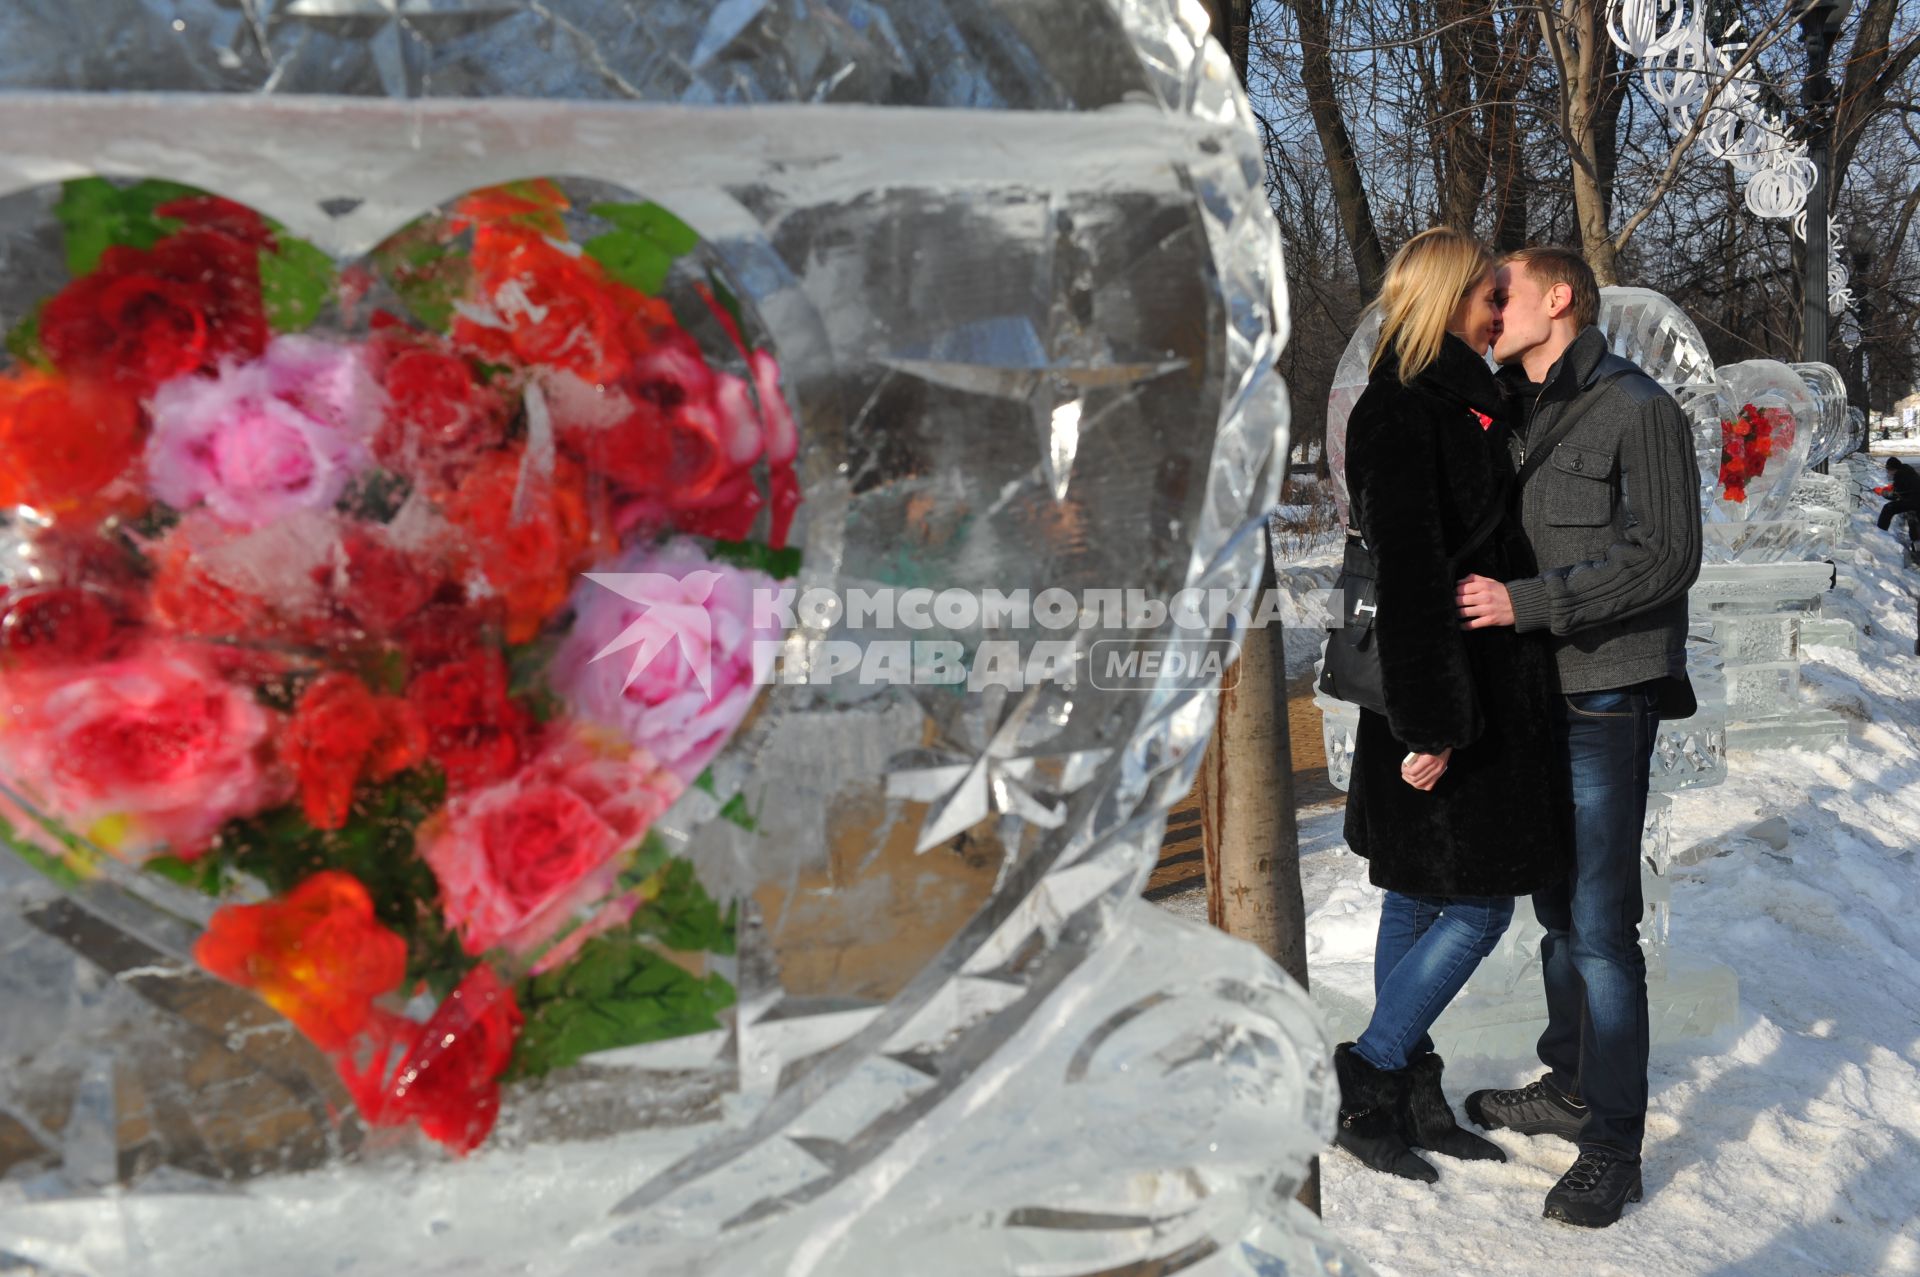 Парк `Сокольники`. Празднование Дня святого Валентина.  Фестиваль оттаявших сердец. На снимке: ледяное сердце с живыми розами.